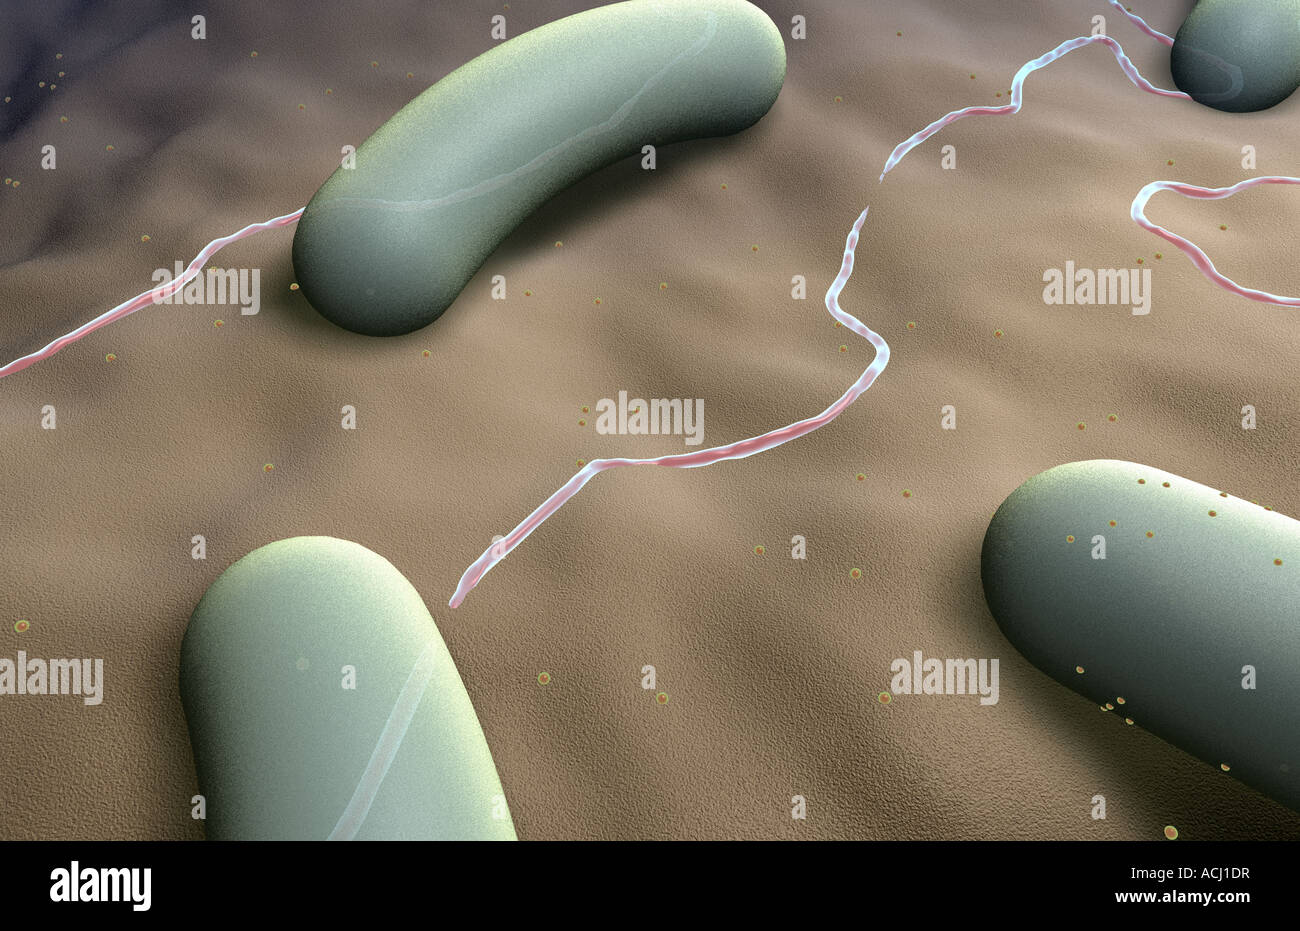 Rod shaped bacteria Stock Photo